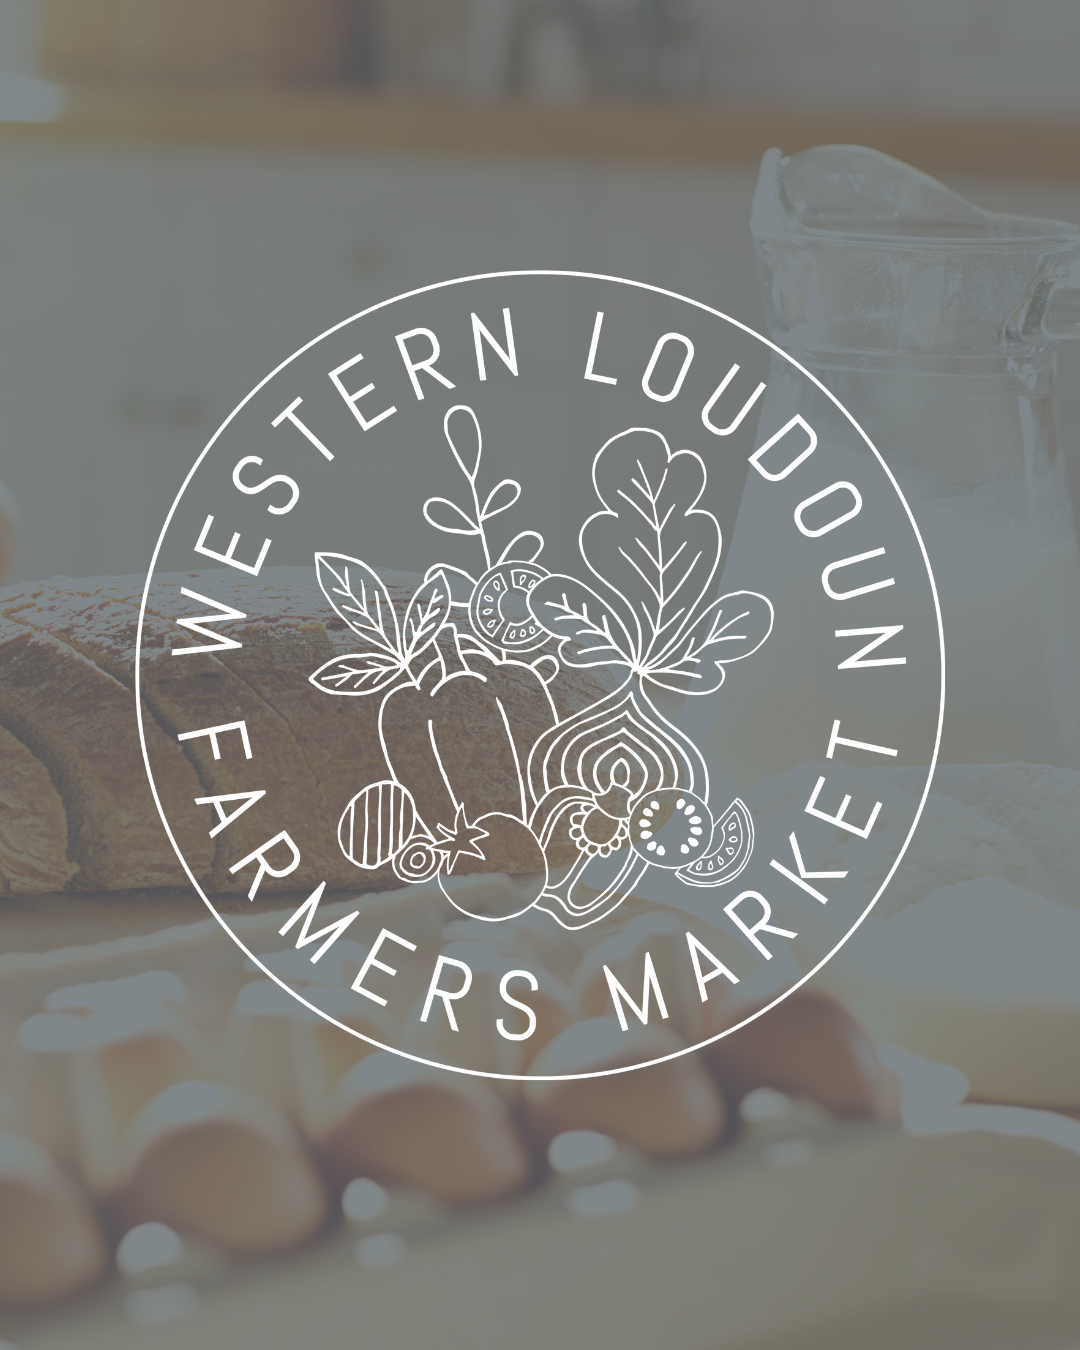 Western Loudoun Farmers Market